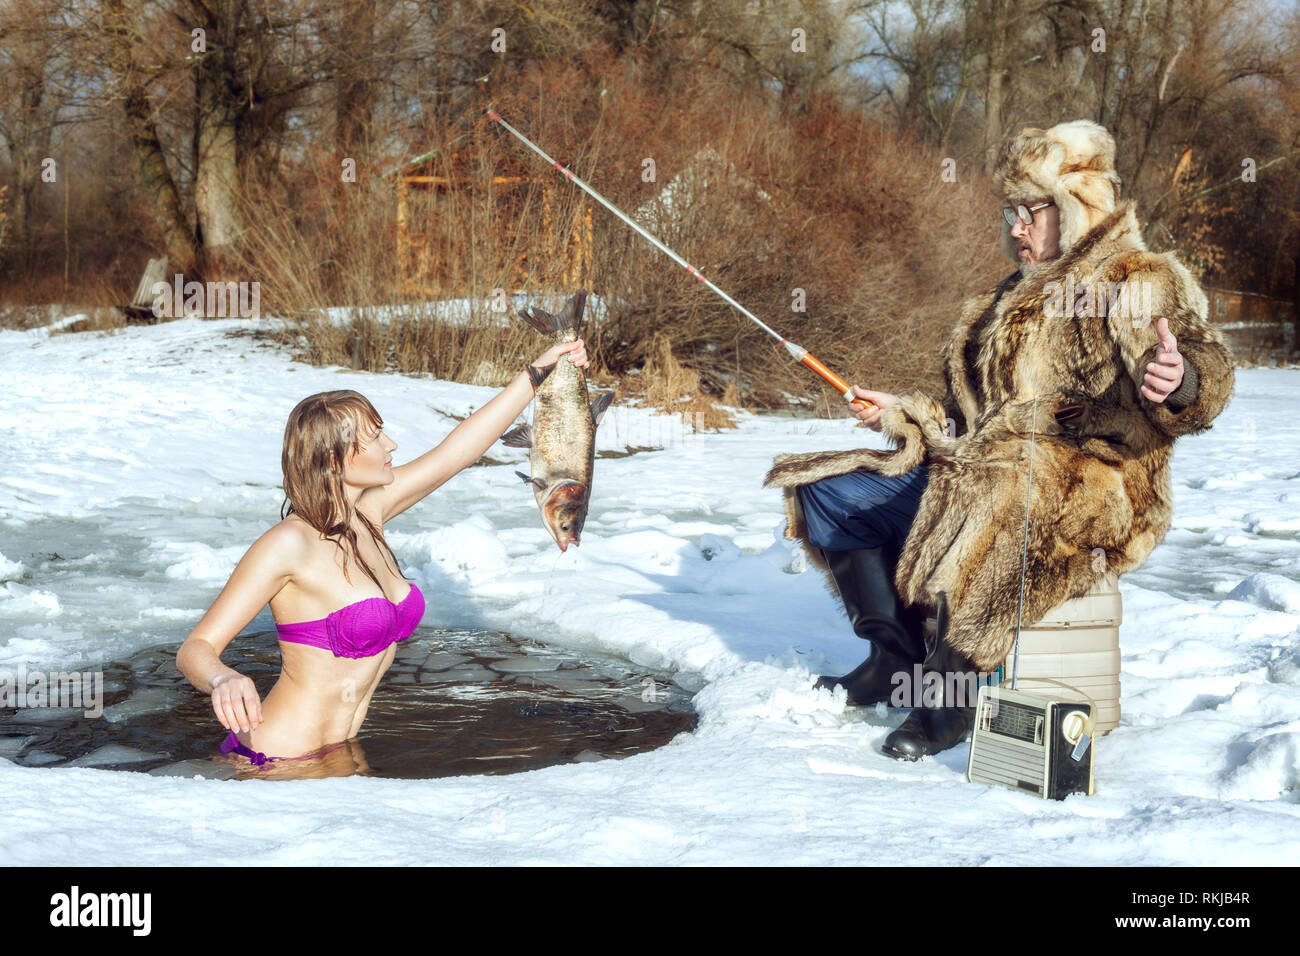 Bikini ice fishing team